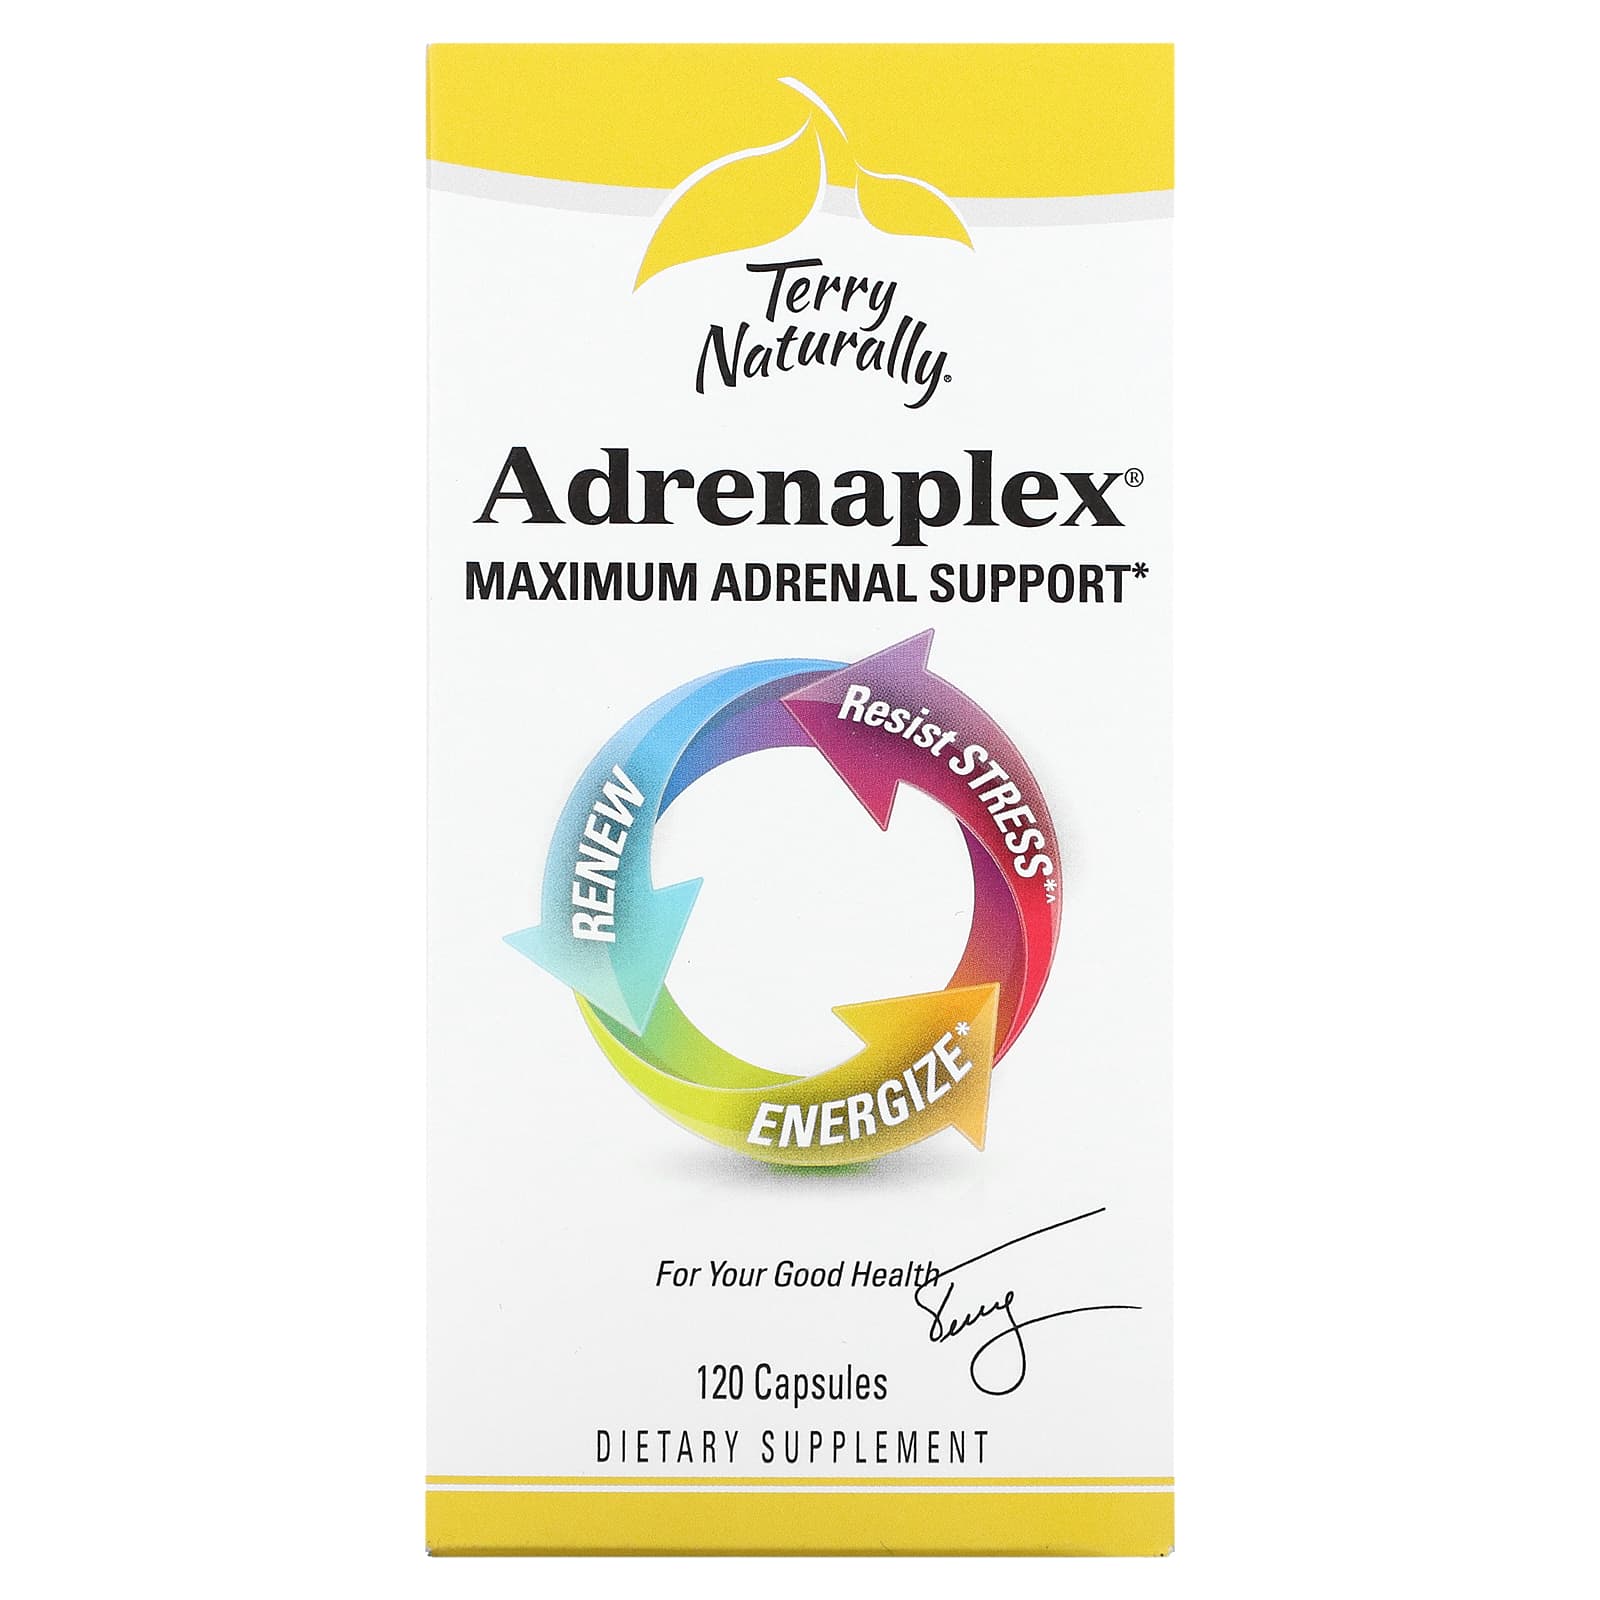 Adrenaplex® Maximum Adrenal Support*